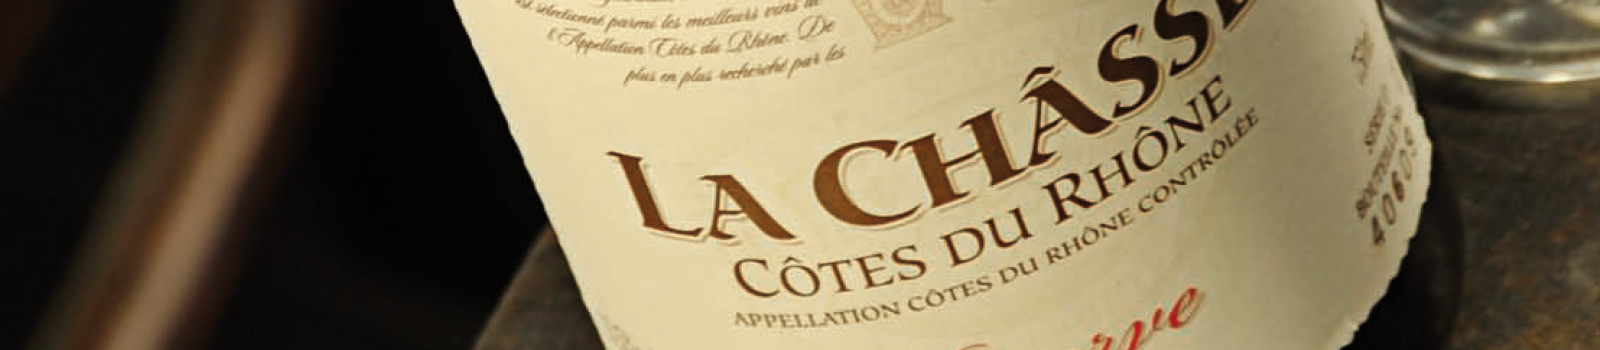 La Chasse, Gabriel Meffre Brands, Trajectory Beverage Partners